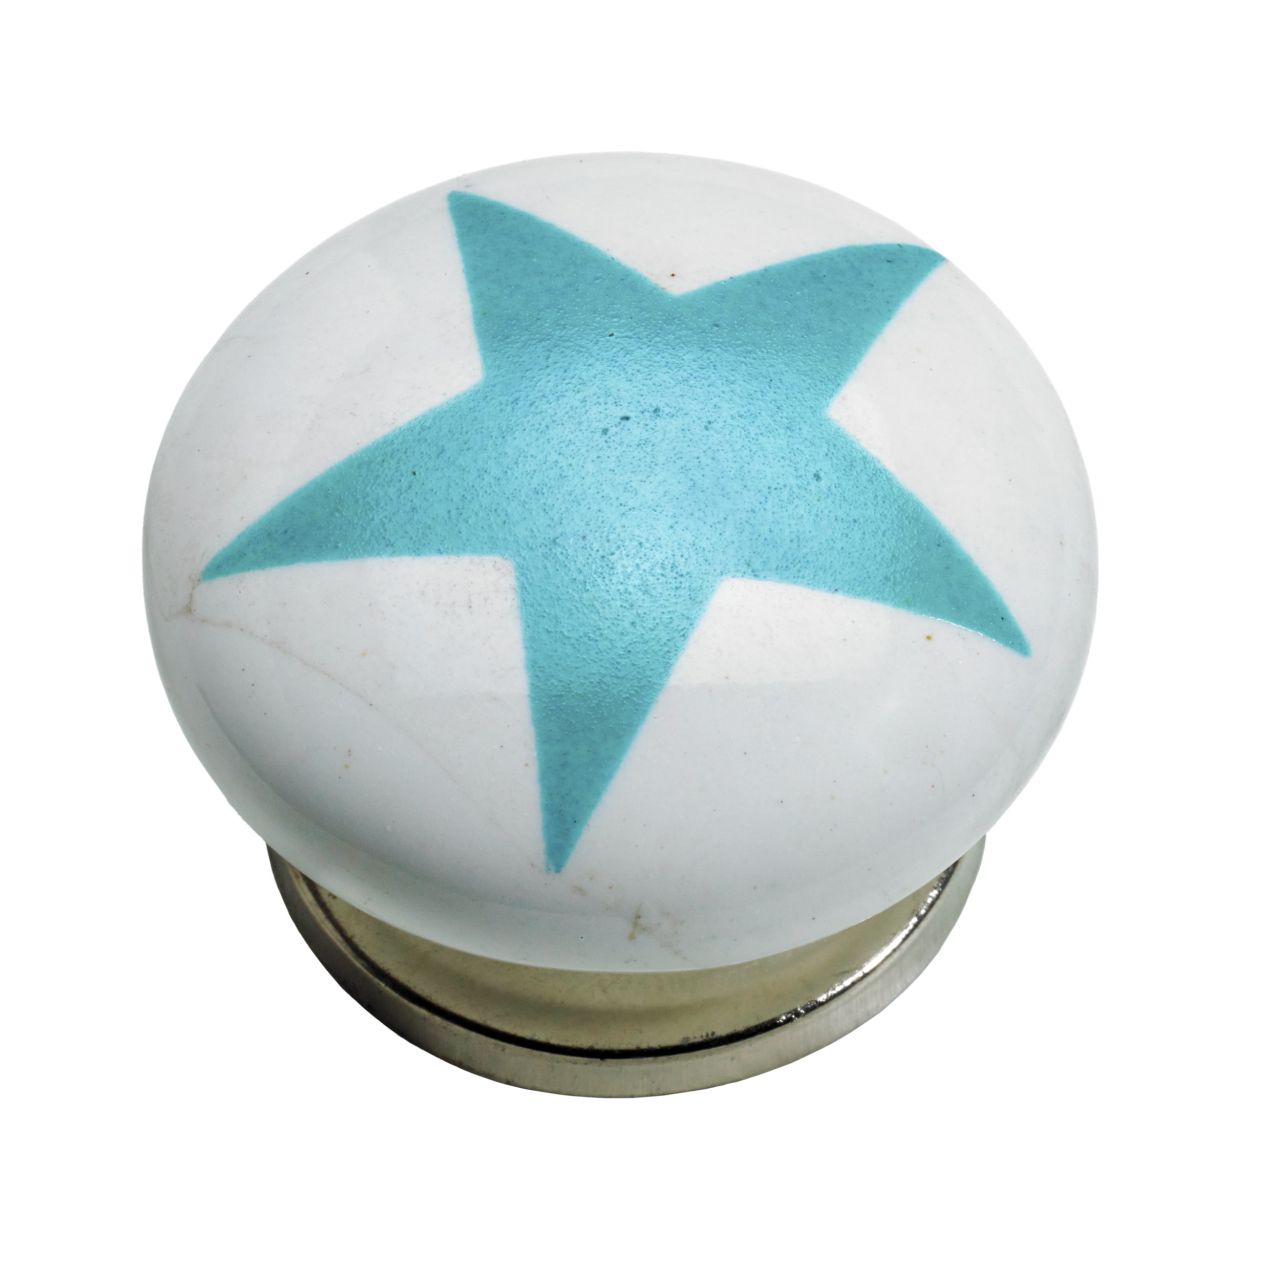 Hettich Möbelknopf Keramik weiß mit blauem Stern Ø 40,0 mm - 1 Stück von HETTICH